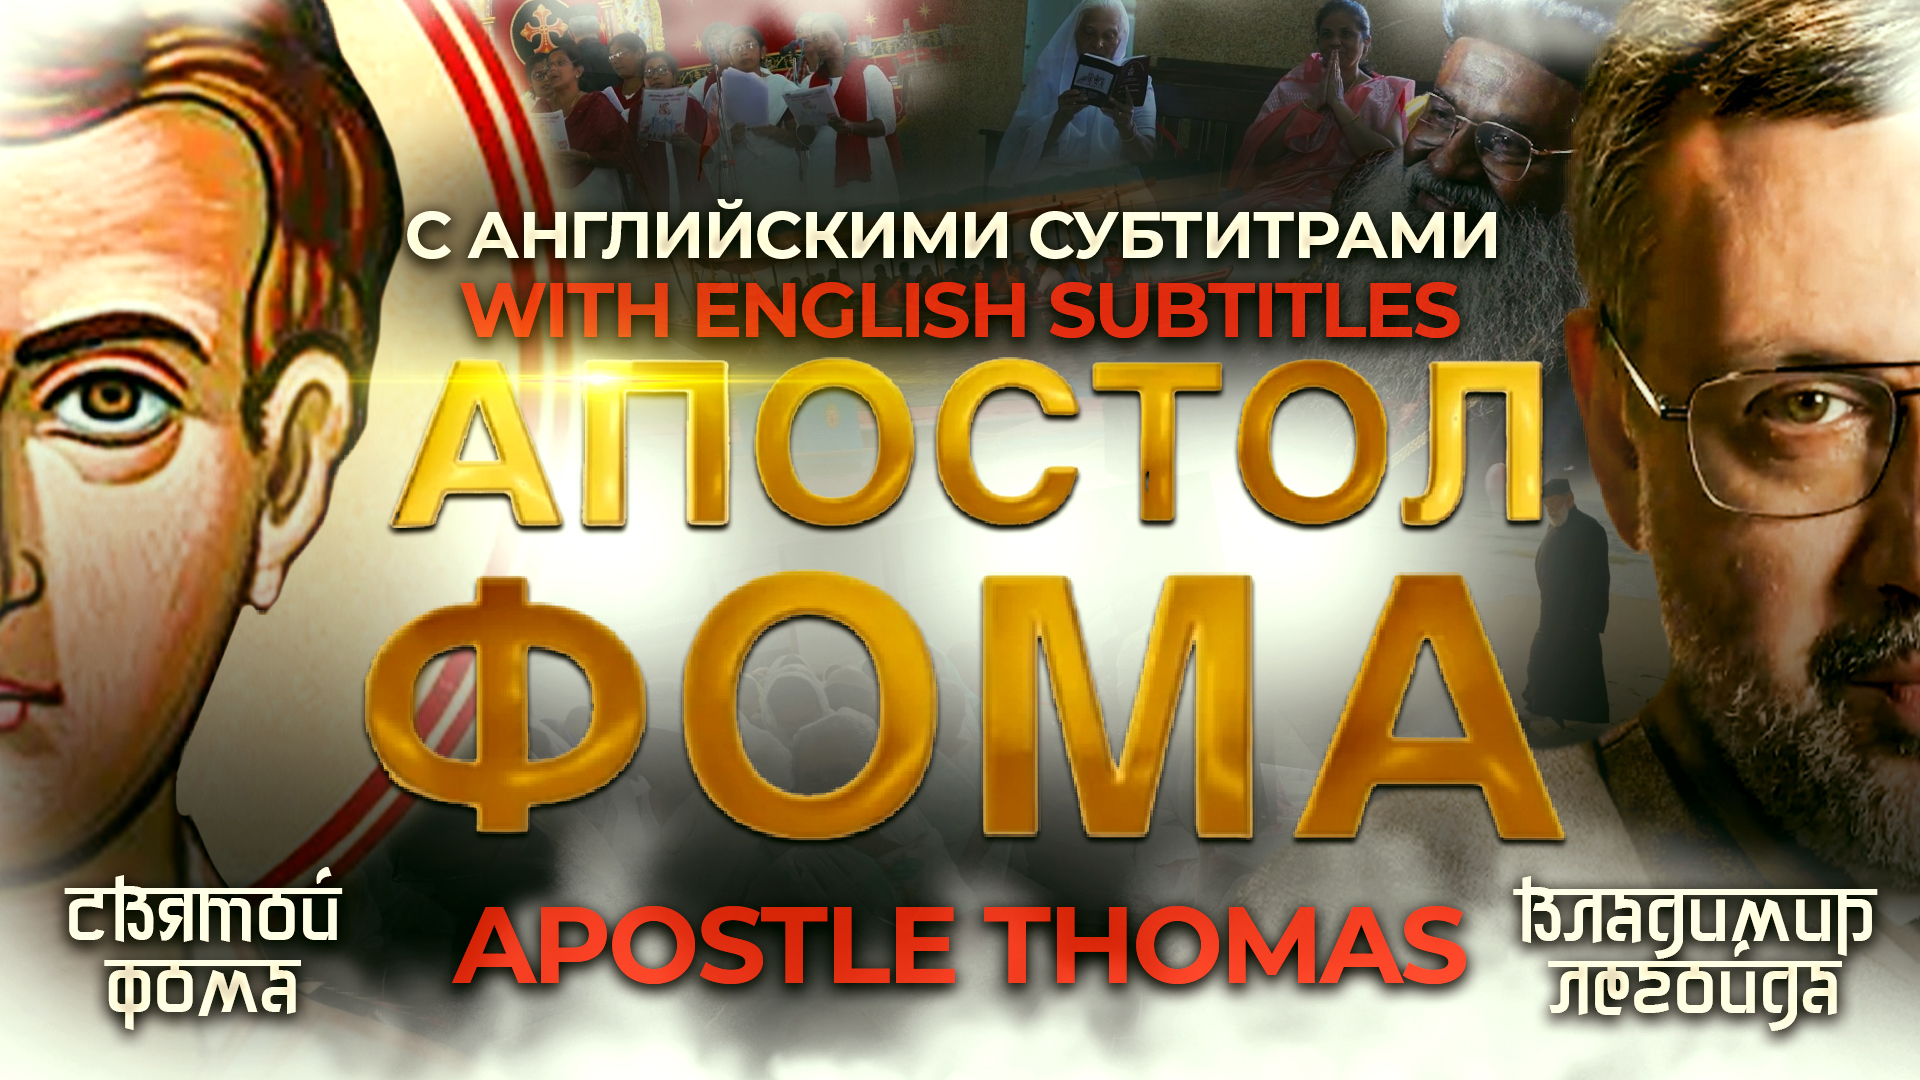 APOSTLE THOMAS. A FILM ABOUT CHRISTIANITY IN INDIA. АПОСТОЛ ФОМА. ФИЛЬМ О ХРИСТИАНСТВЕ В ИНДИИ ТЕПЕРЬ С АНГЛИЙСКИМИ СУБТИТРАМИ!